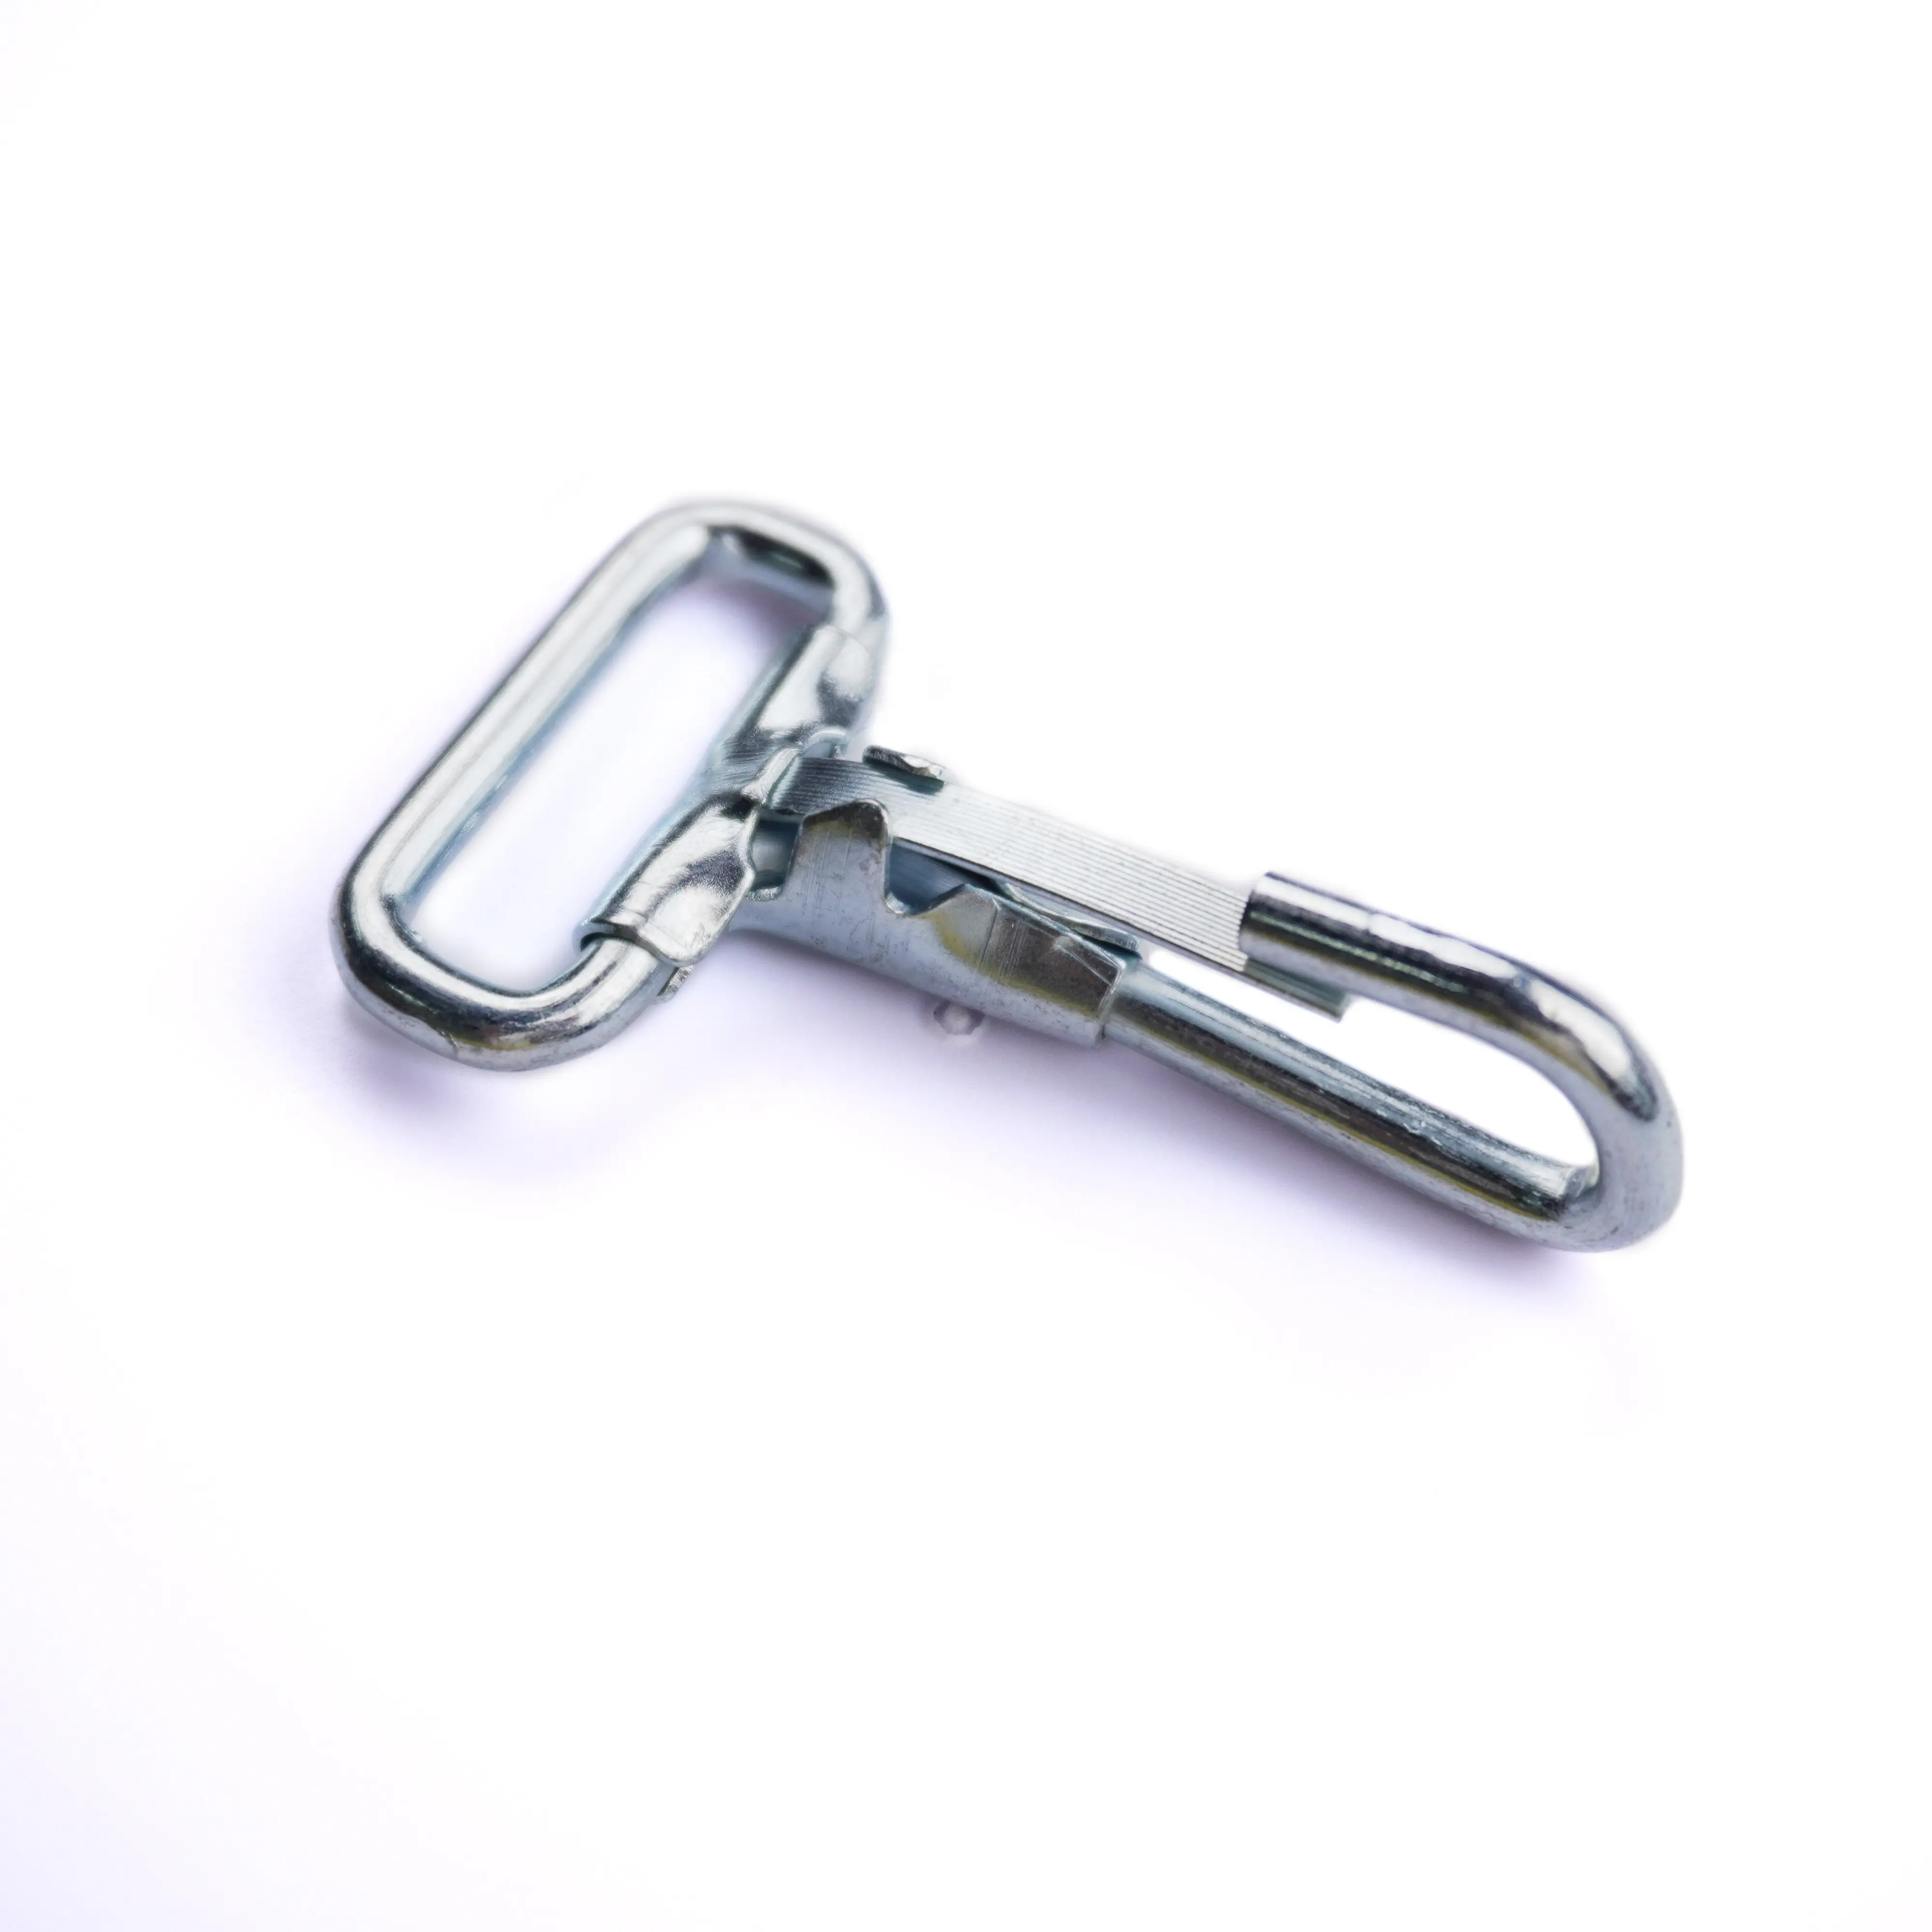 Promocional OEM Metal Spring Clip Snap Dog Hook Hierro niquelado Diferentes tamaños Bolso Gancho de metal